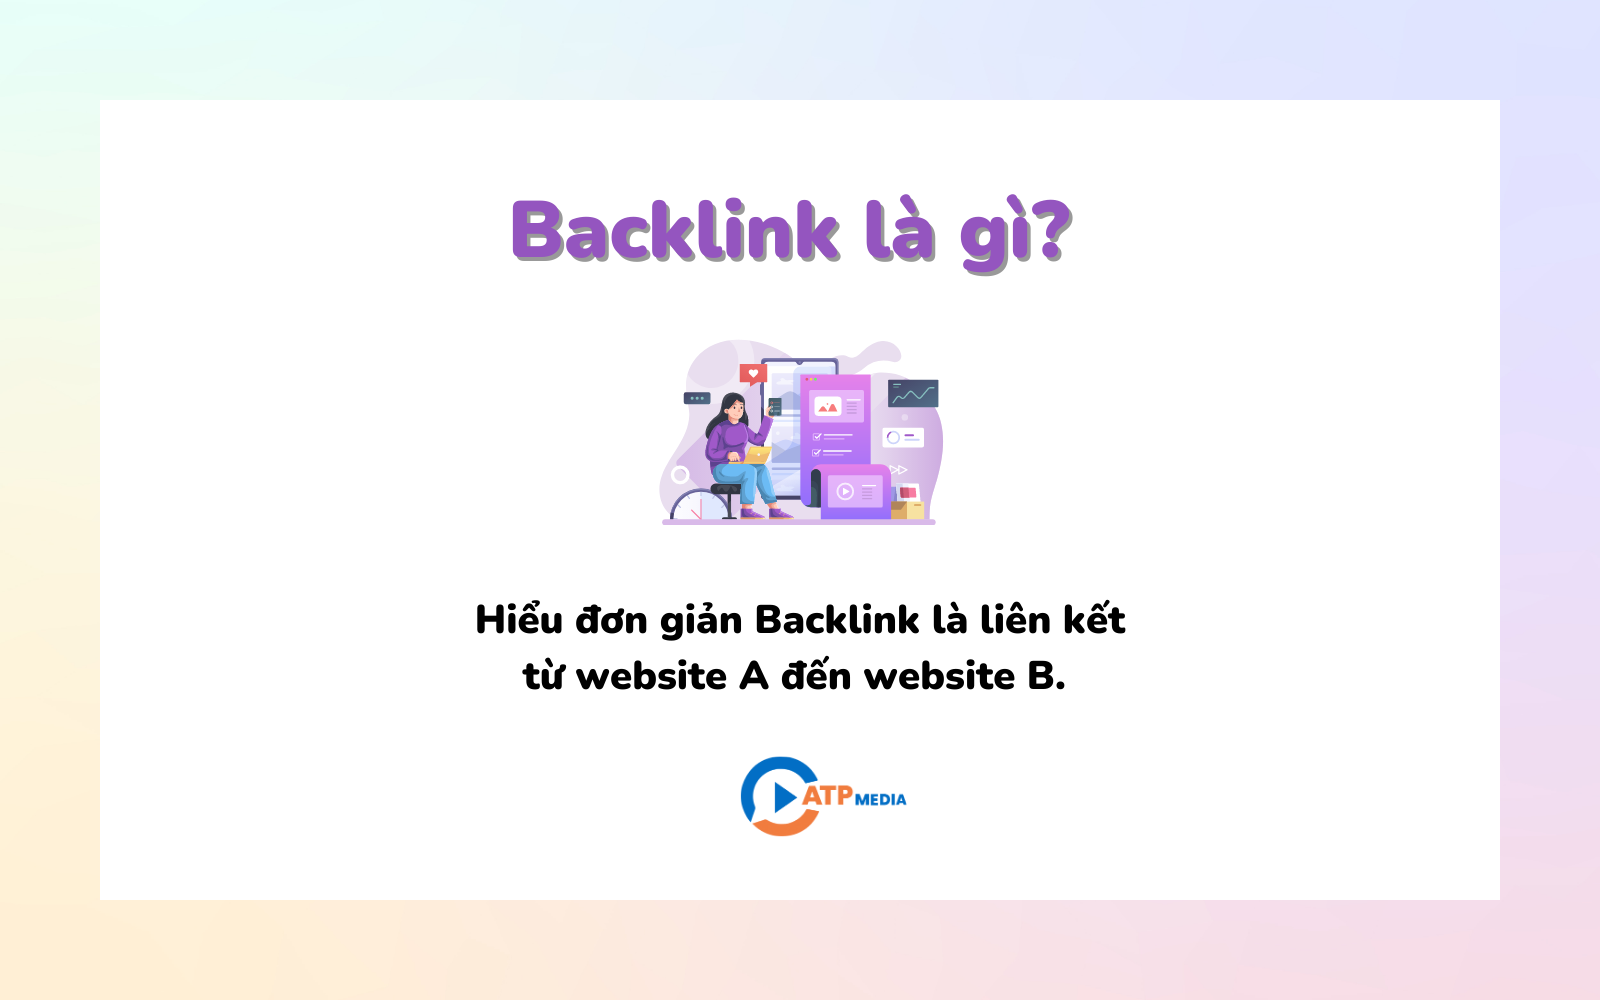 Backlink là gì? 5 Cách xây dựng Backlink hiệu quả - ATP Media (1)